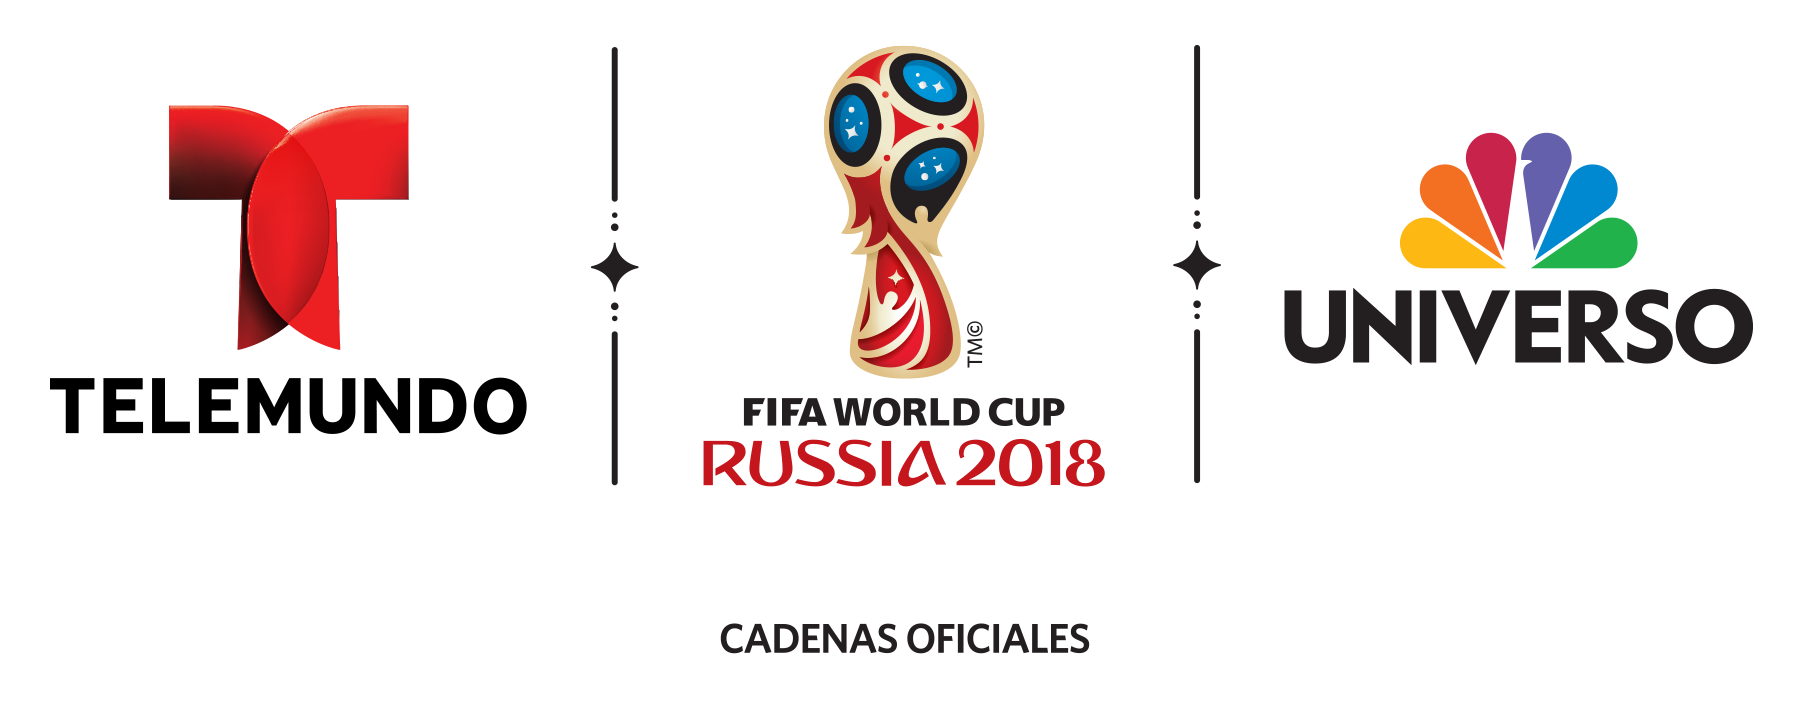  Telemundo en cuenta regresiva de 100 días para el Mundial de Rusia 2018